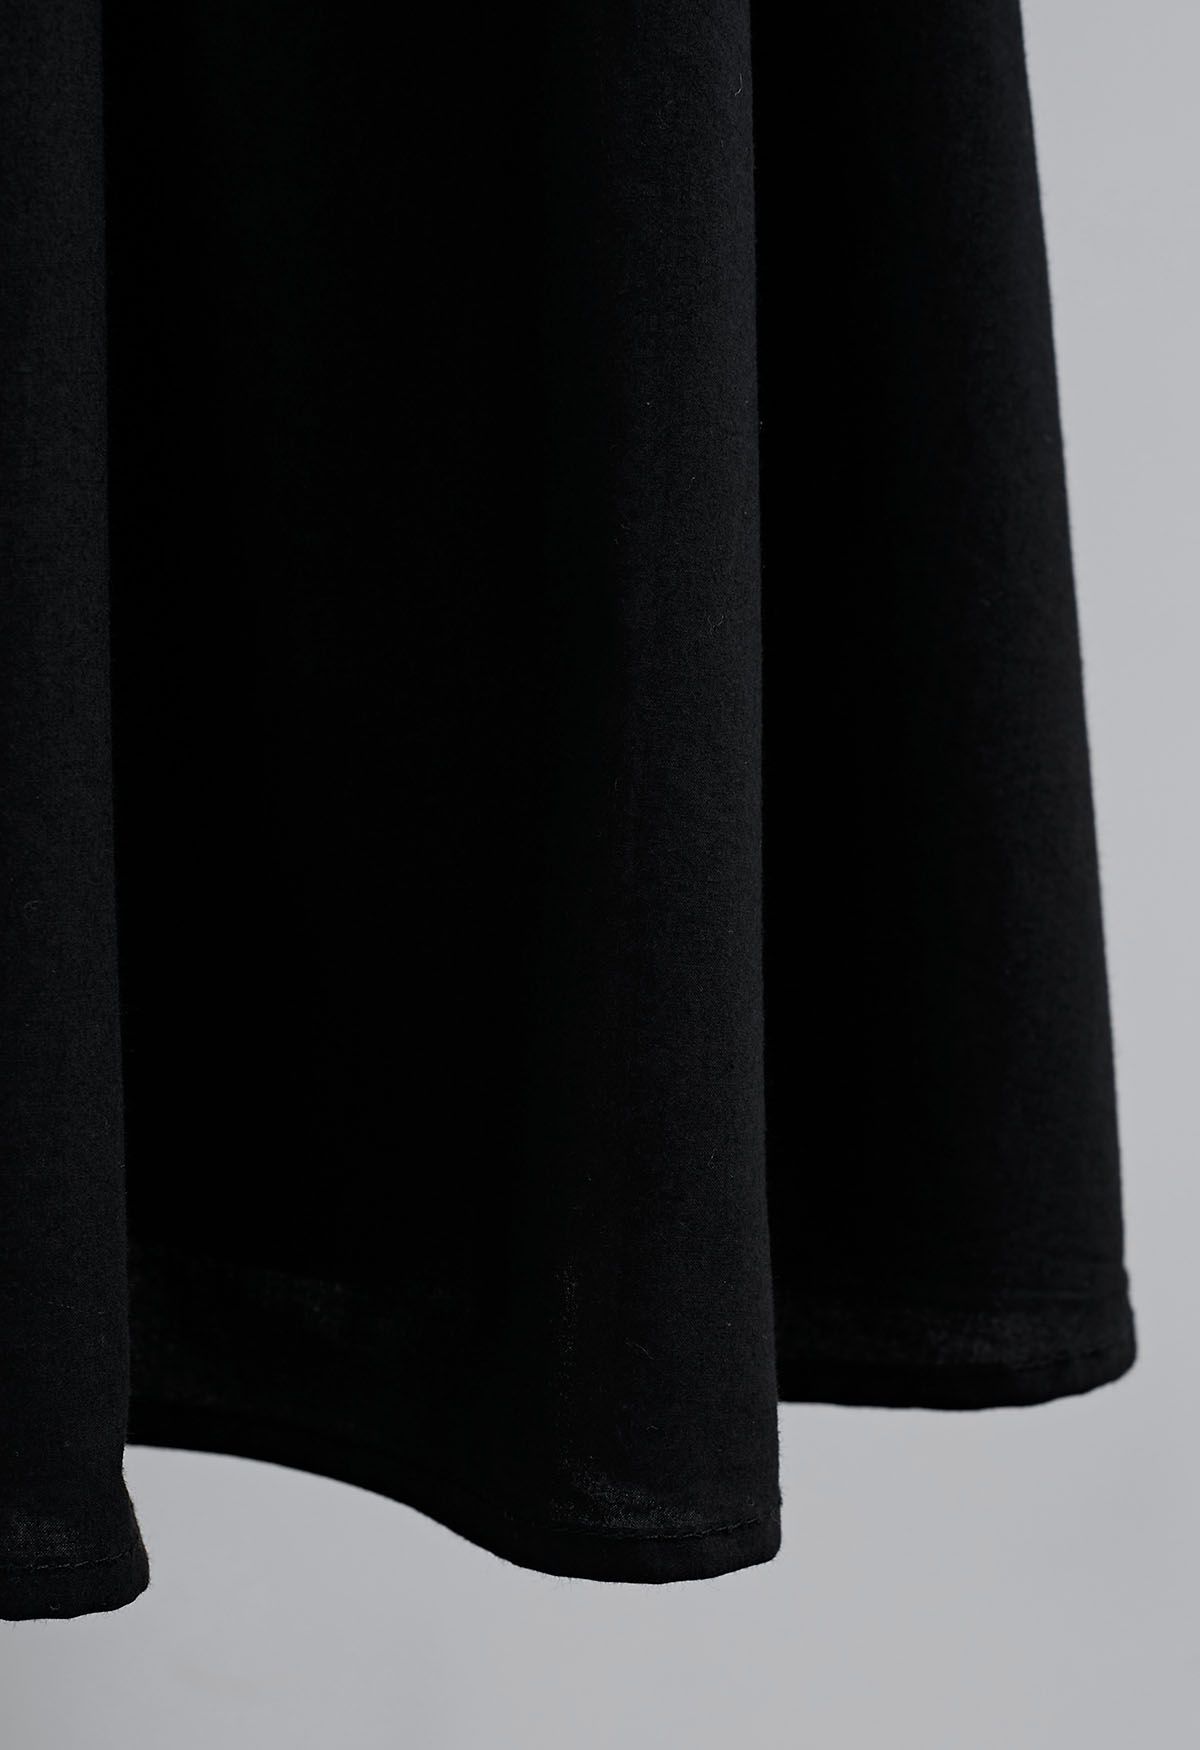 Falda acampanada con textura de elegancia simple en negro